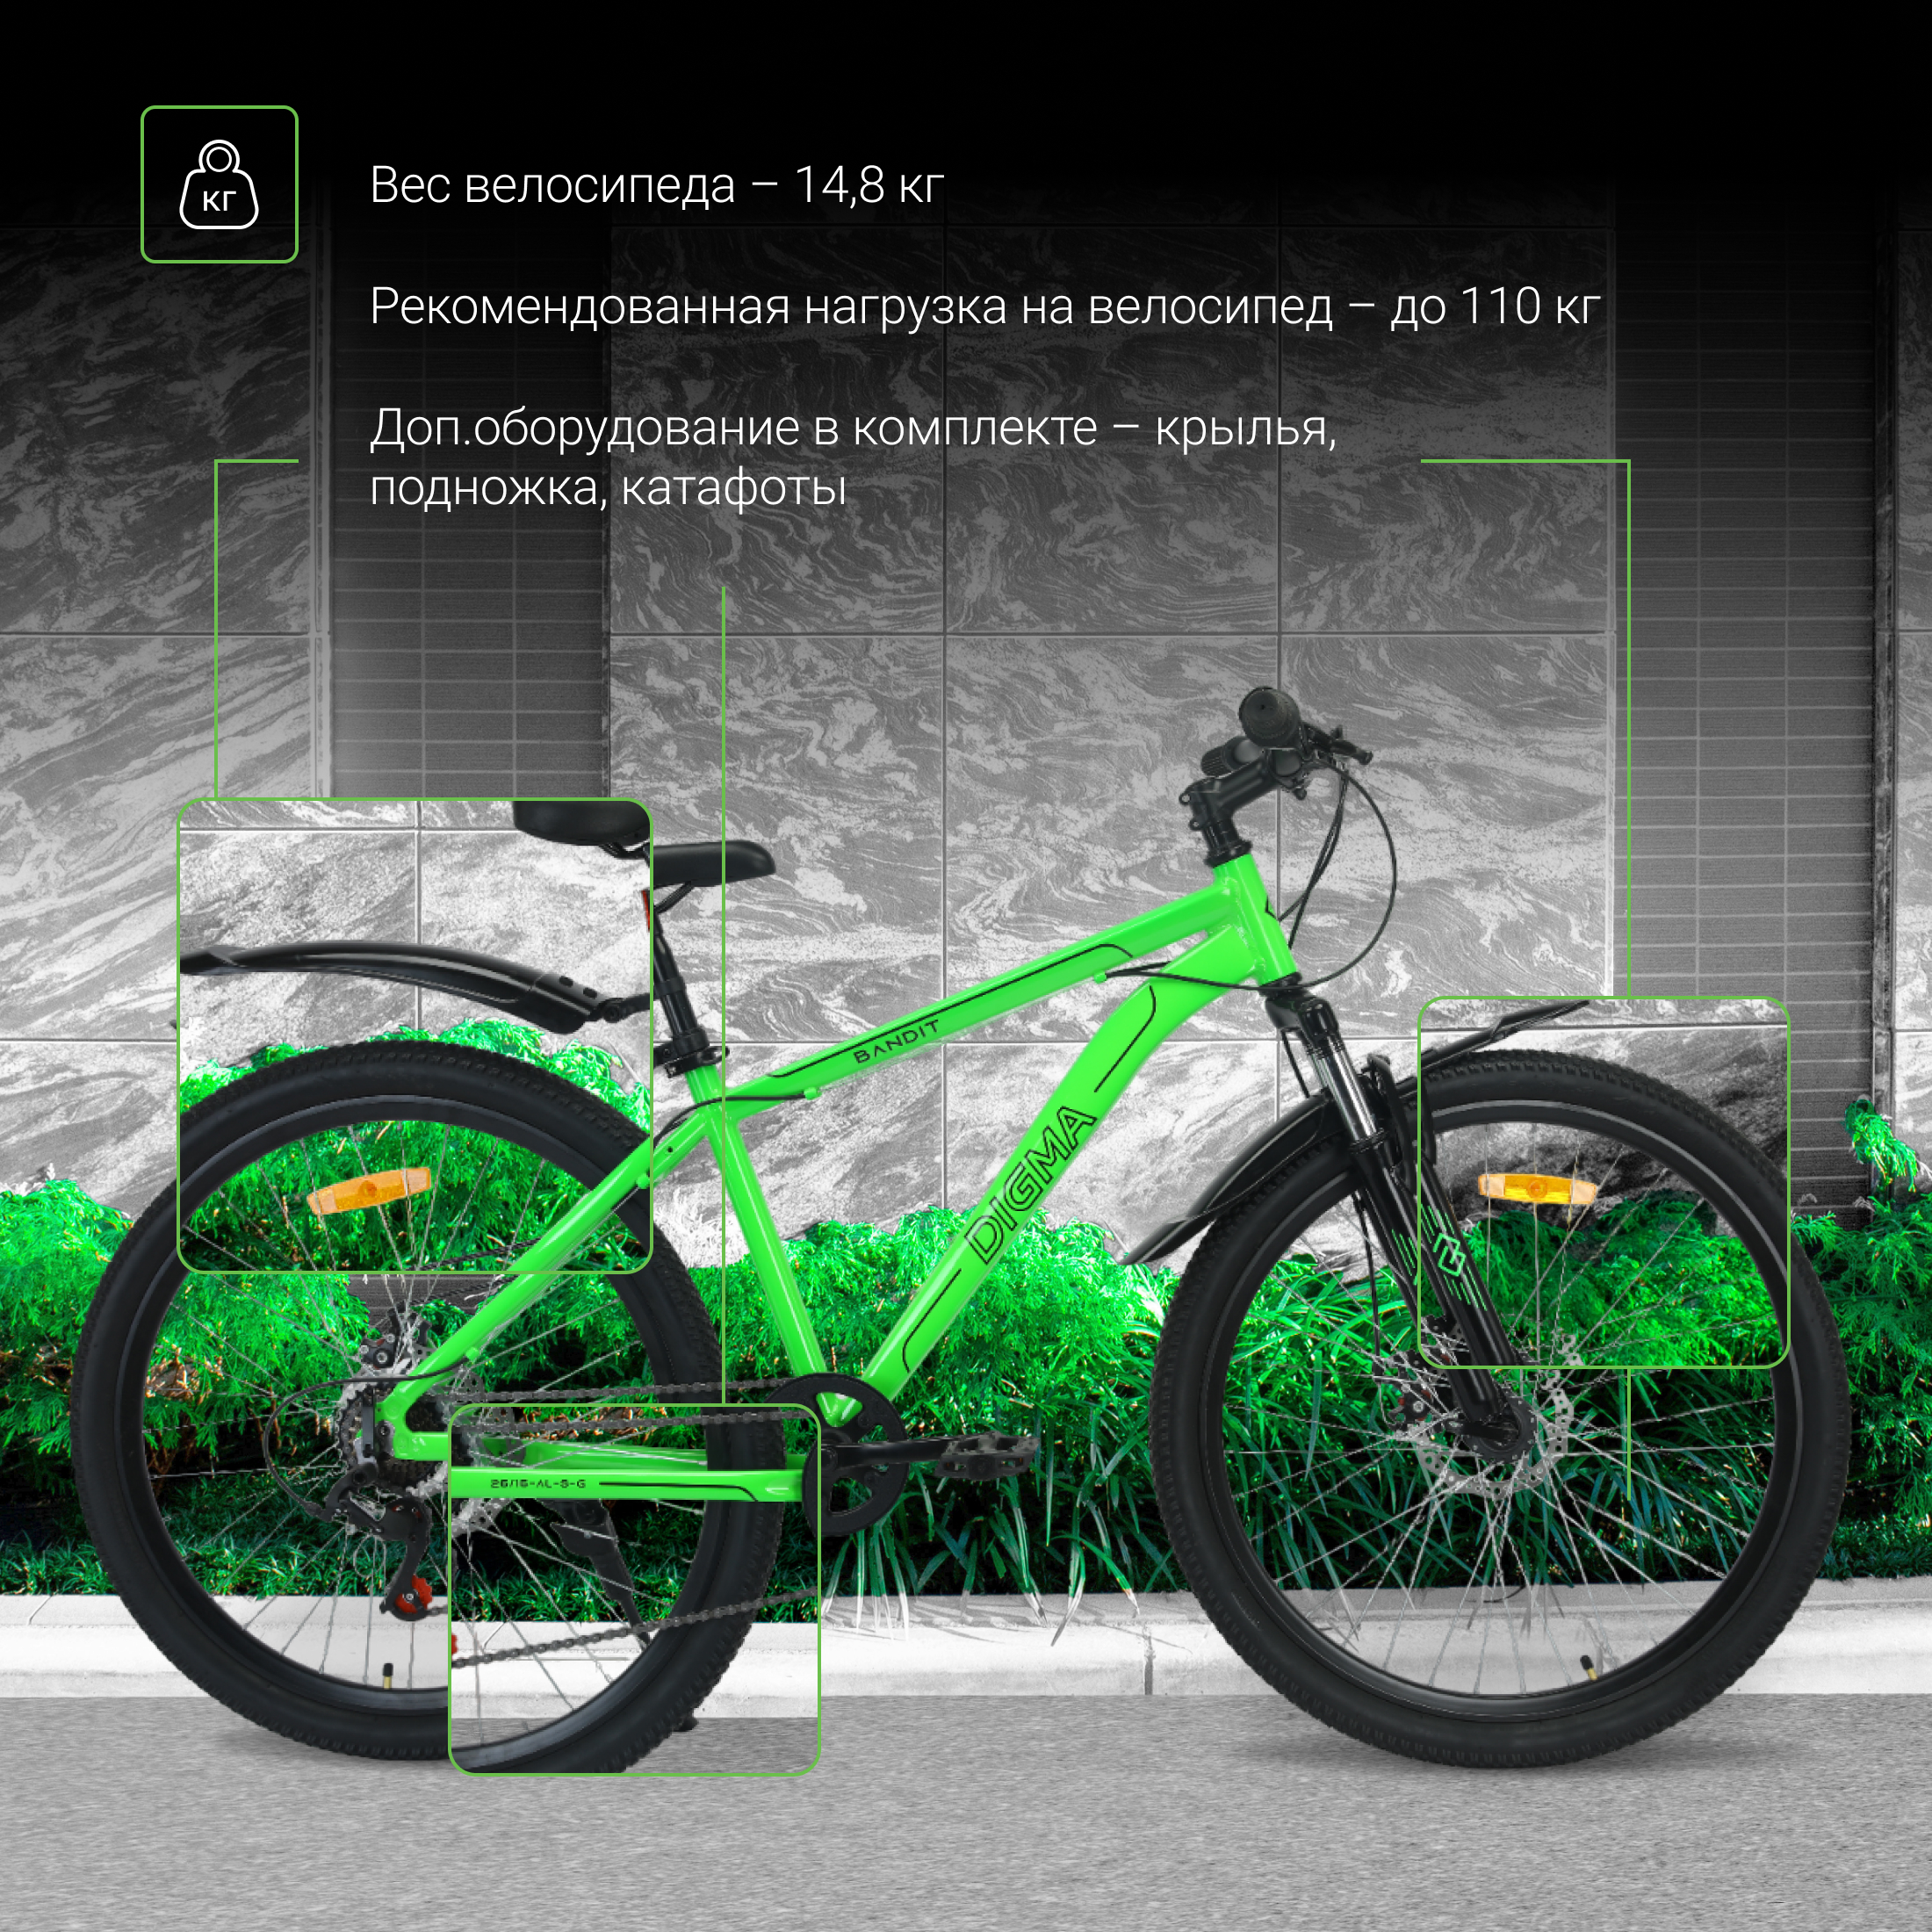 Велосипед Digma Bandit зеленый - фото 4